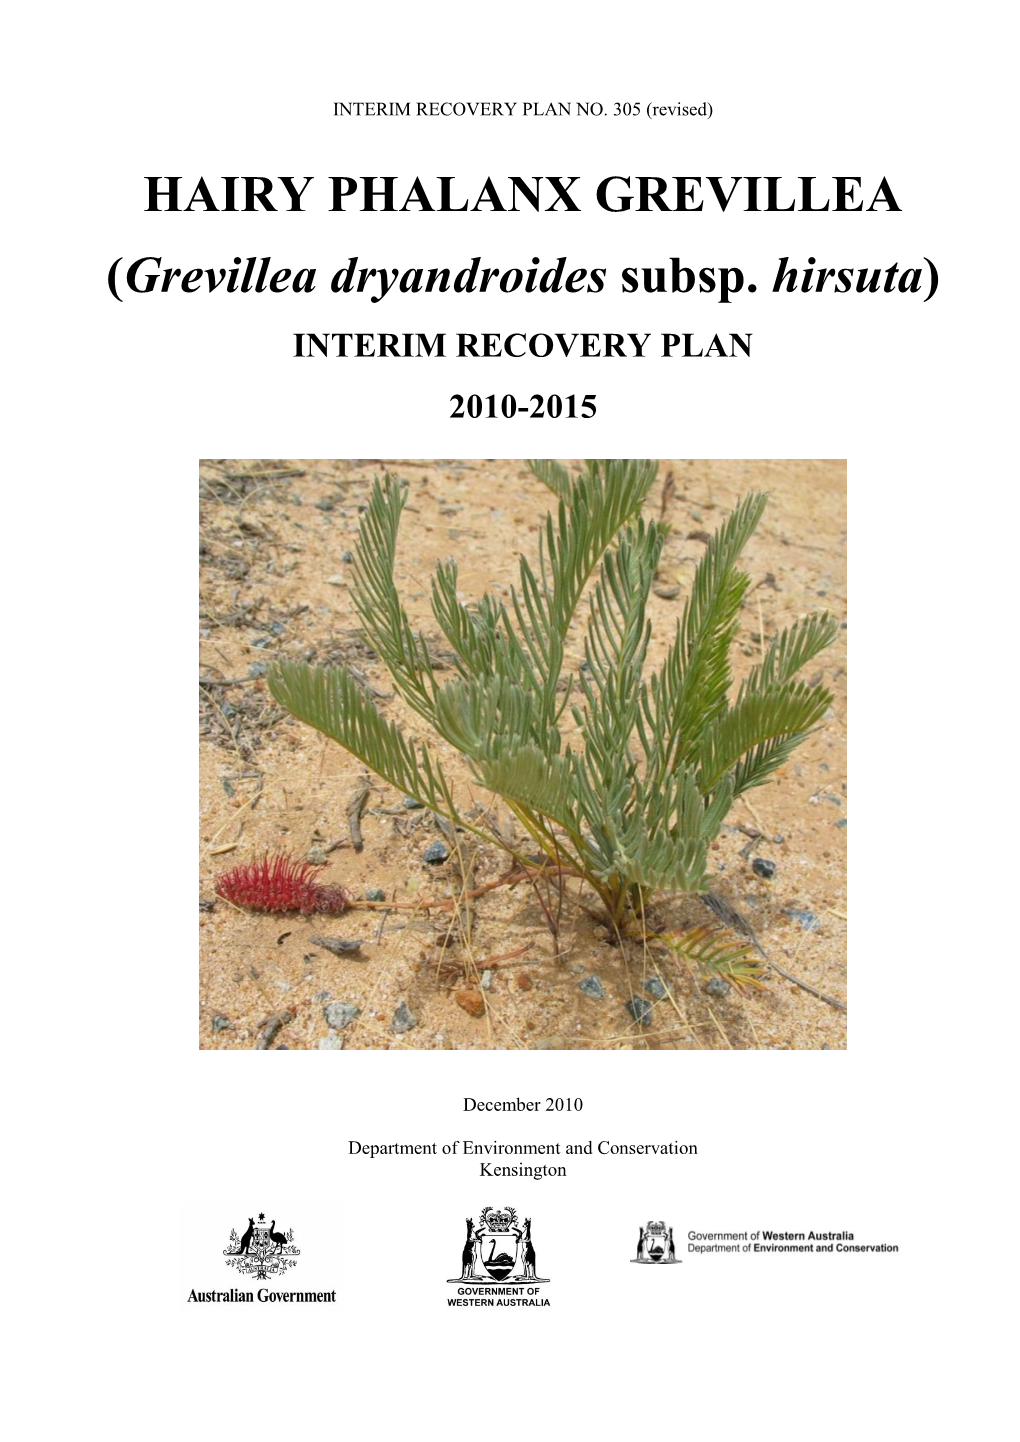 Grevillea Dryandroides Subsp. Hirsuta)